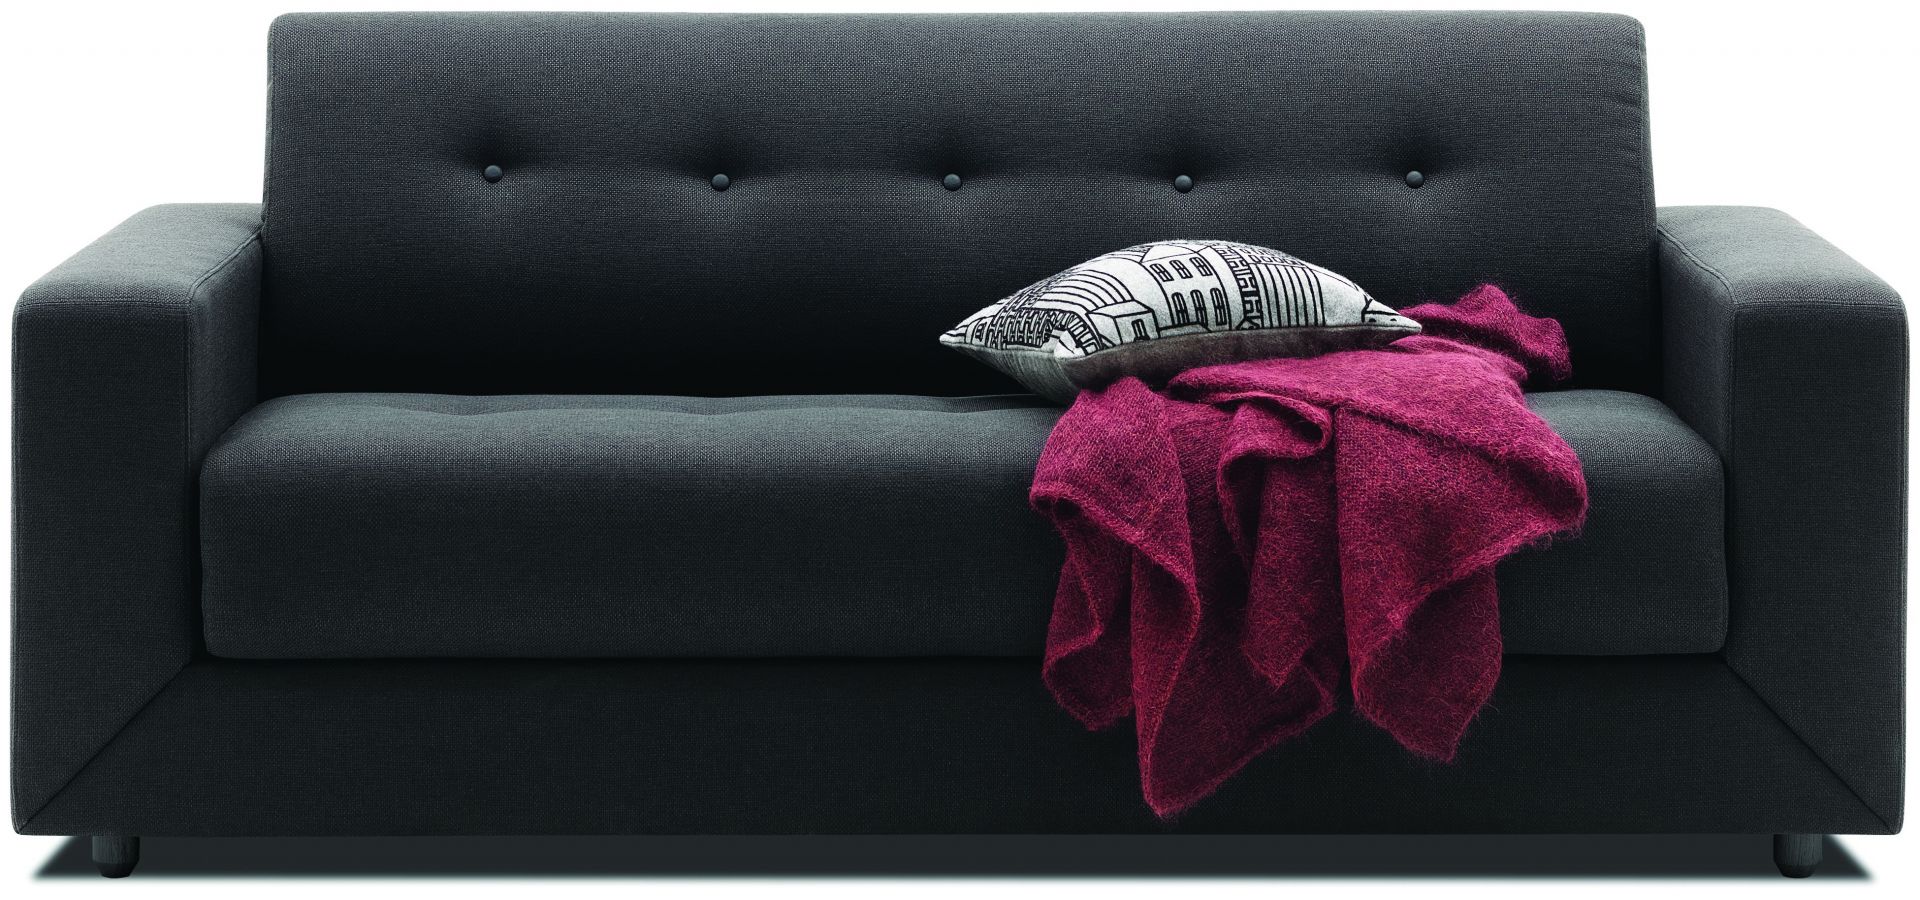 Sofa Stockholm z funkcją spania, marki BoConcept, to ciekawe i jednocześnie proste rozwiązanie i zamiennik łóżka.
Fot. BoConcept